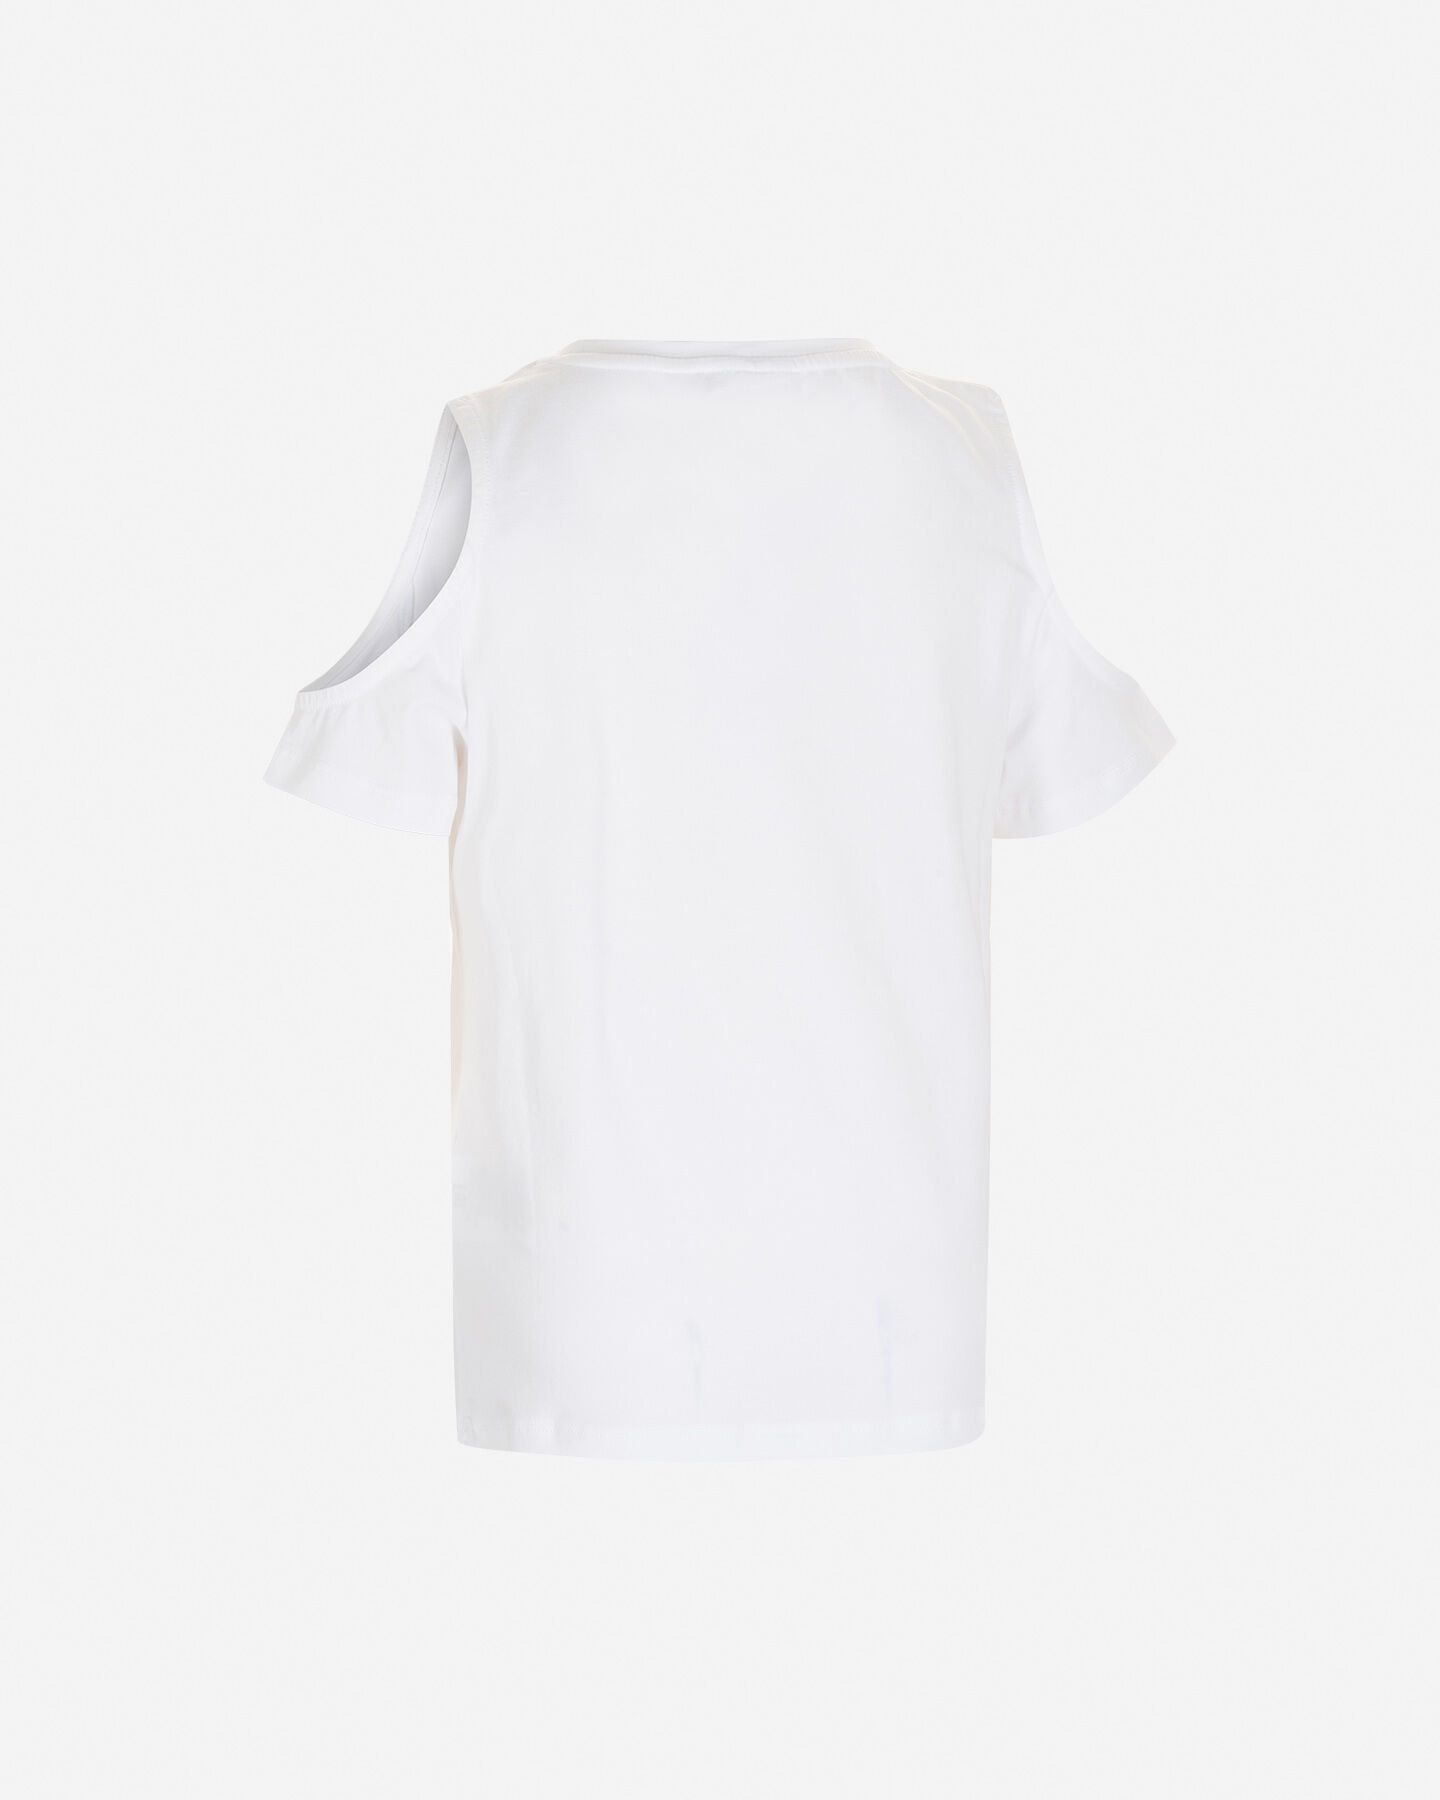  T-Shirt FREDDY OBLO' GIOIELLO JR S4104090|005|8A scatto 1